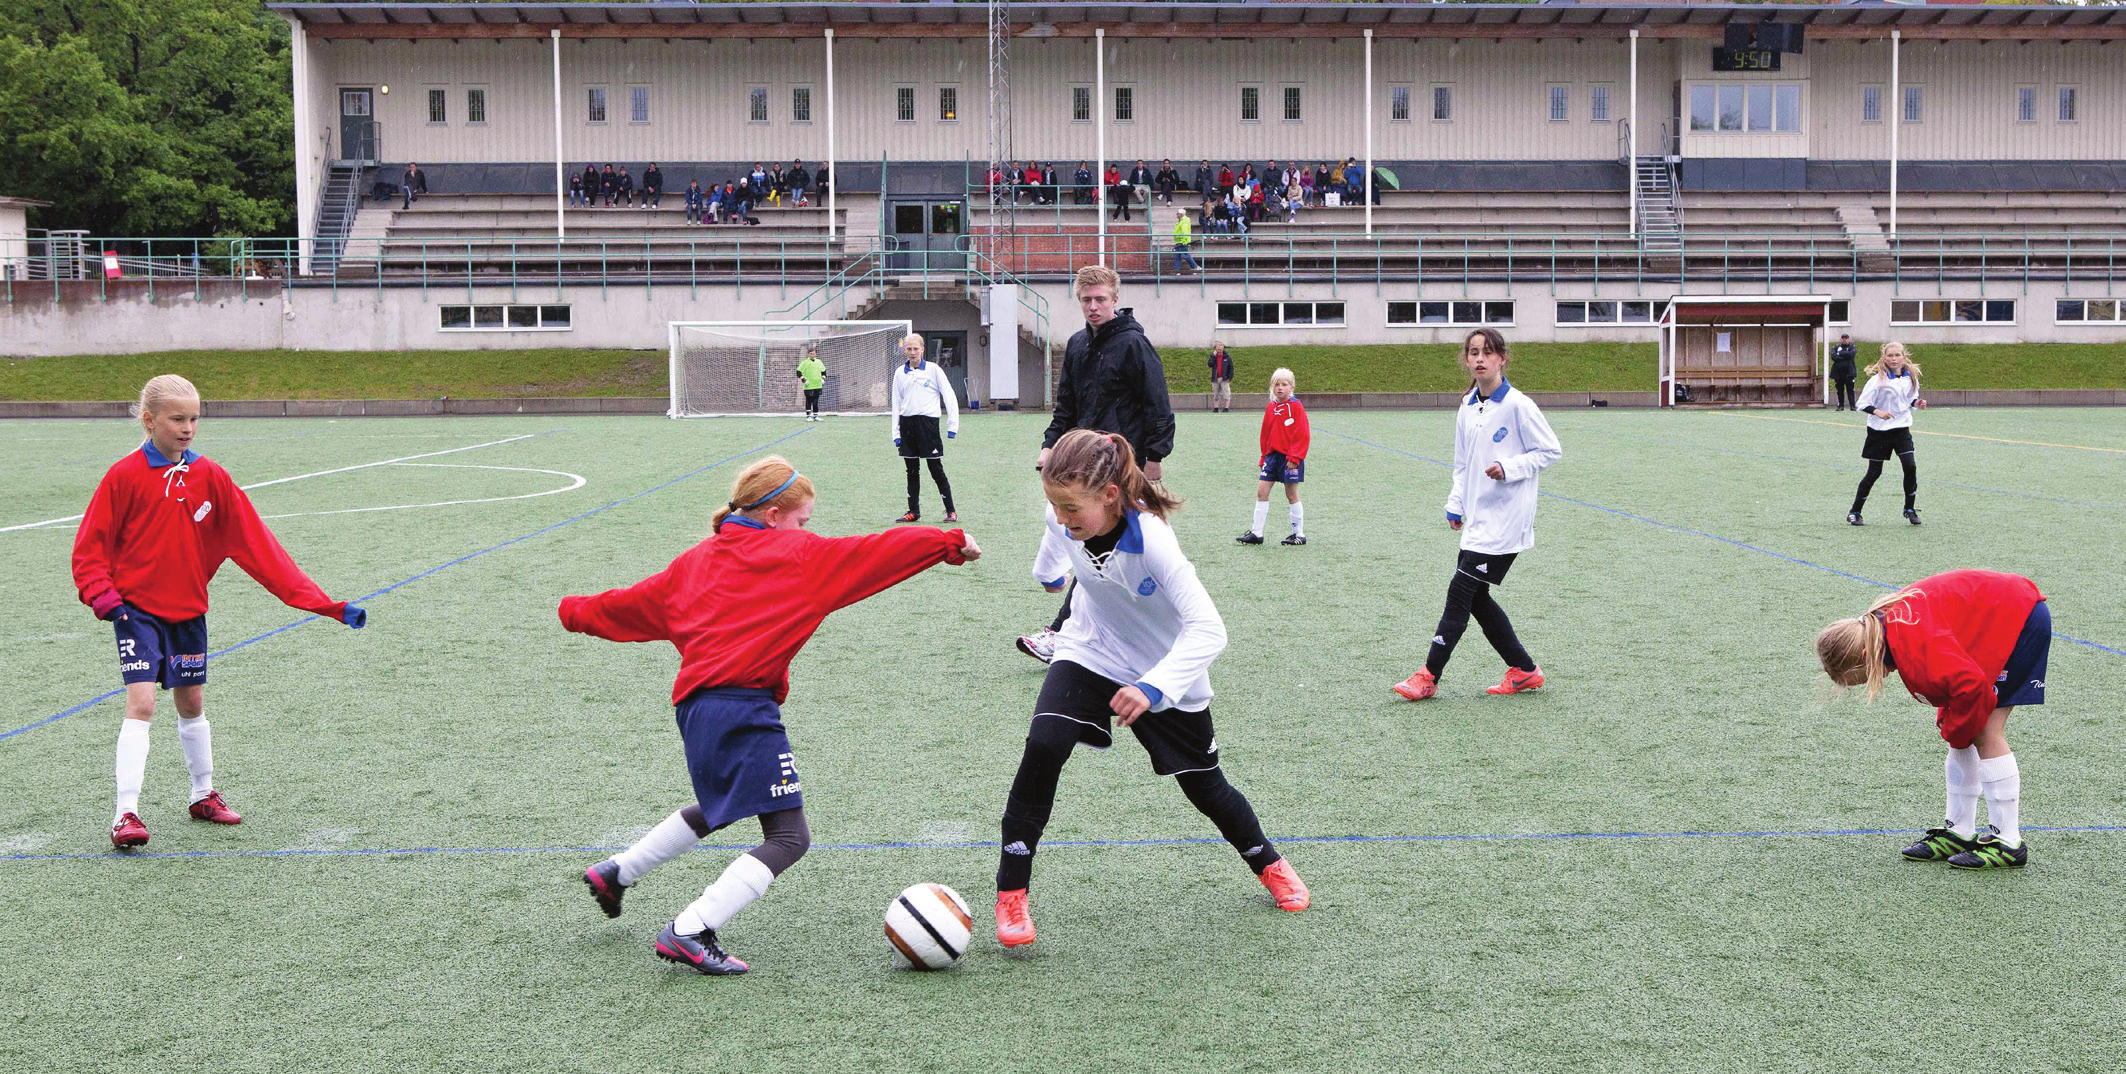 Fotbollen lockar många utövare. Sats ningen på konstgräsplaner har inneburit att fler flickor börjat spela fotboll.